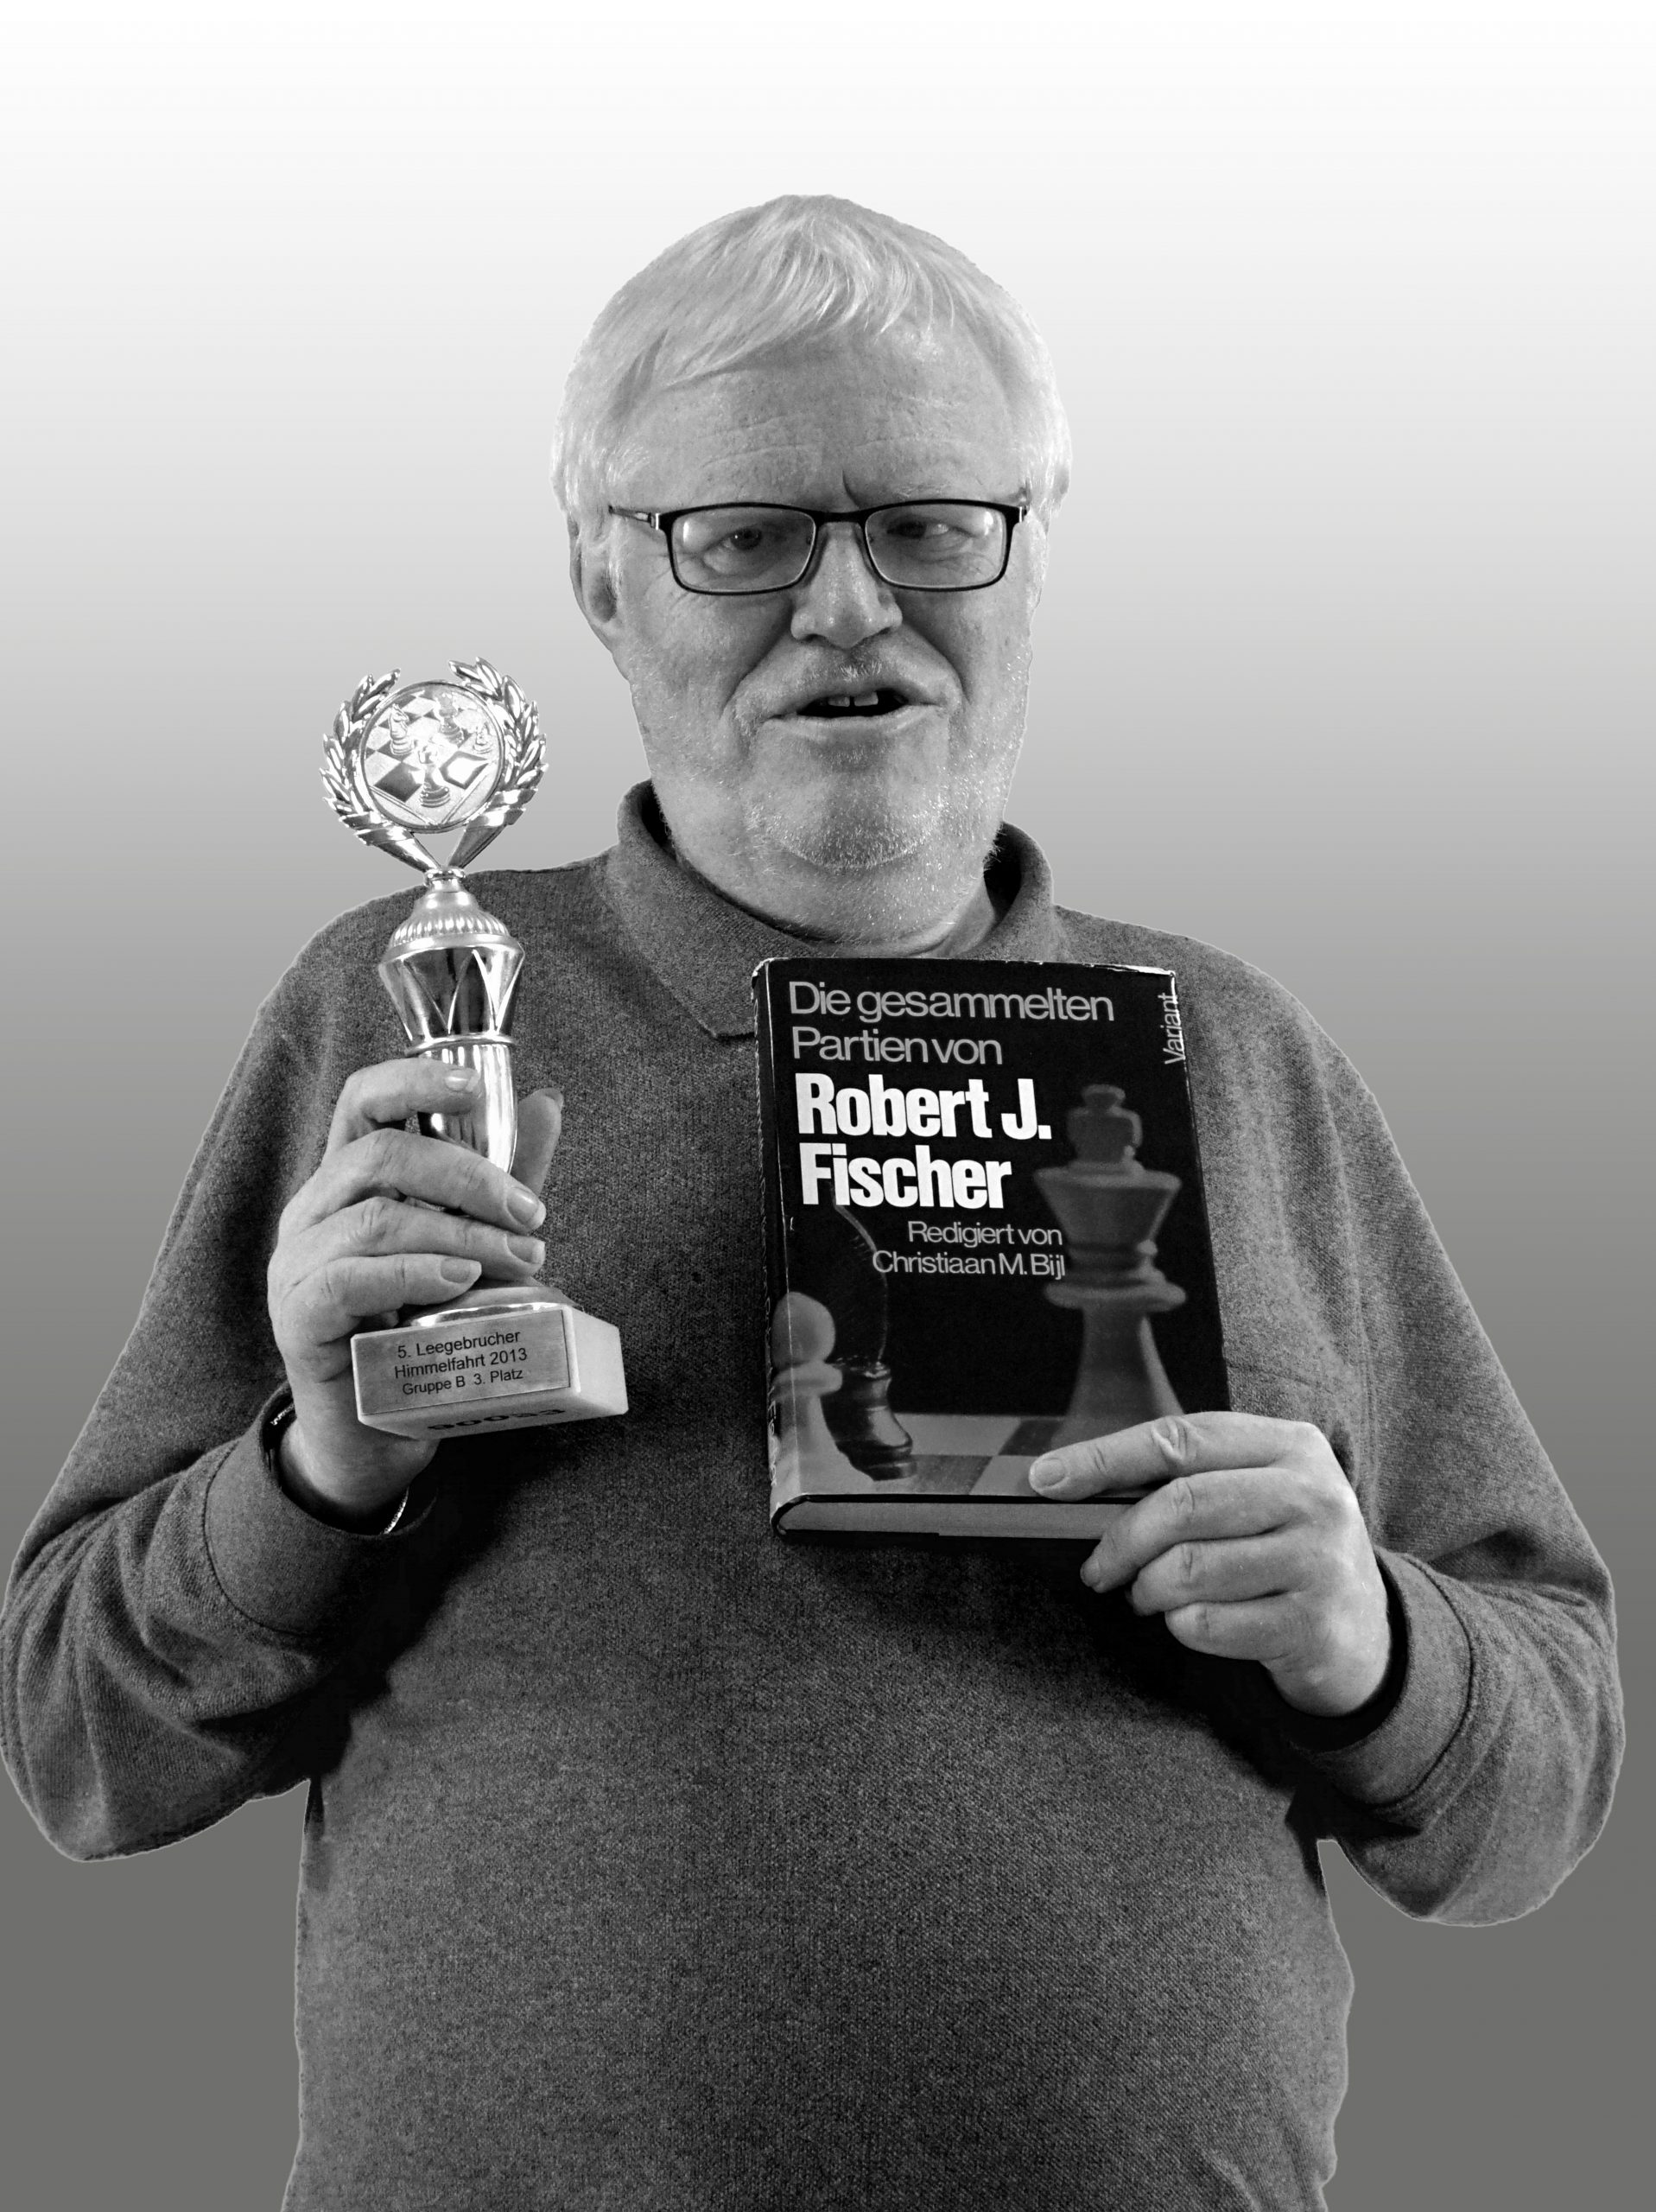 Hartmut Rakow blickt in die Kamera und lächelt. In der rechten Hand hält er einen Pokal, auf dessen Sockel „5. Leegebrucher Himmelfahrt 2013 Gruppe B 3. Platz steht“. In seiner linken Hand hält er ein Buch mit dem Titel „Die gesammelten Partien von Robert J. Fischer“.